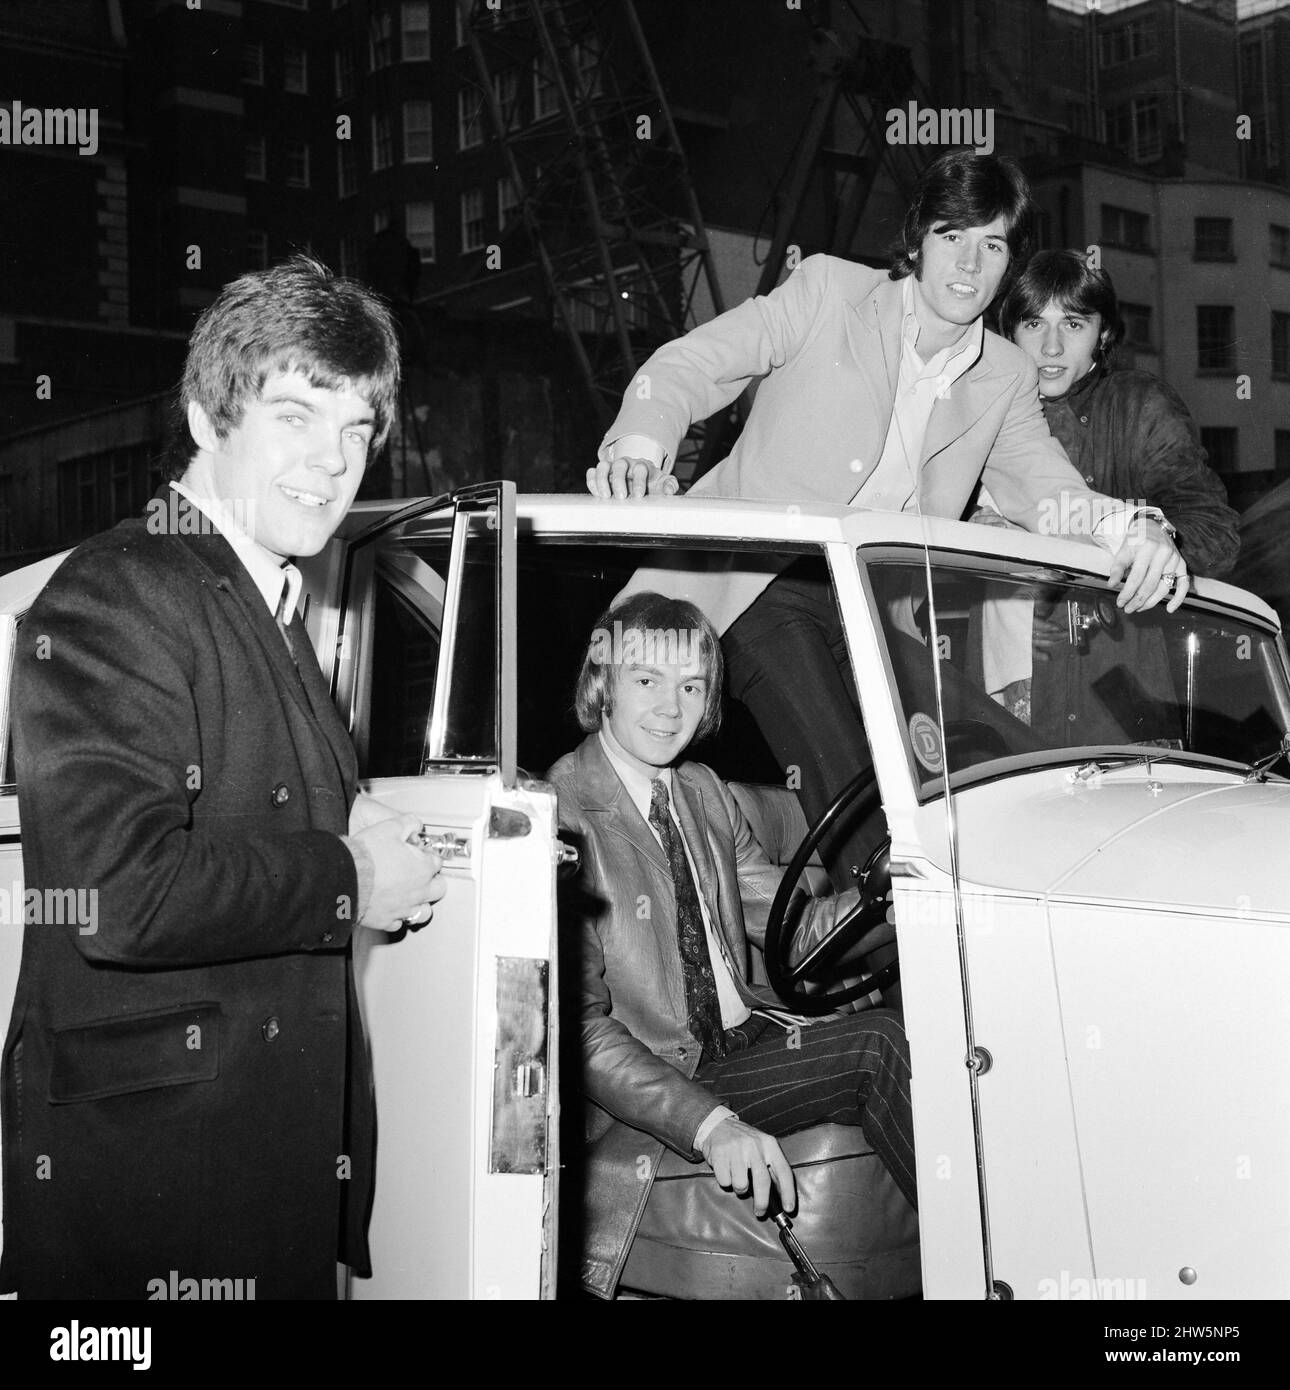 Les Bee Gees examinent un cadeau de Noël de l'agent Robert Stigwood, un 1948 Rolls Royce Silver Wraith, 12th décembre 1967. La voiture a été offerte comme cadeau spécial pour marquer et célébrer les 1 millions de ventes record de leur seul Massachusetts. Quatre des cinq membres du groupe regardent la voiture et lui donnent un vernis et propre. M. Stigwood a eu la voiture entièrement retapissée et peinte, et le moteur a été remis en état. Photo : Colin Peterson, Vince Melouney, Barry Gibb et Robin Gibb dans Adams Row, Mayfair (Robin Gibb n'était pas disponible pour la photo) Banque D'Images